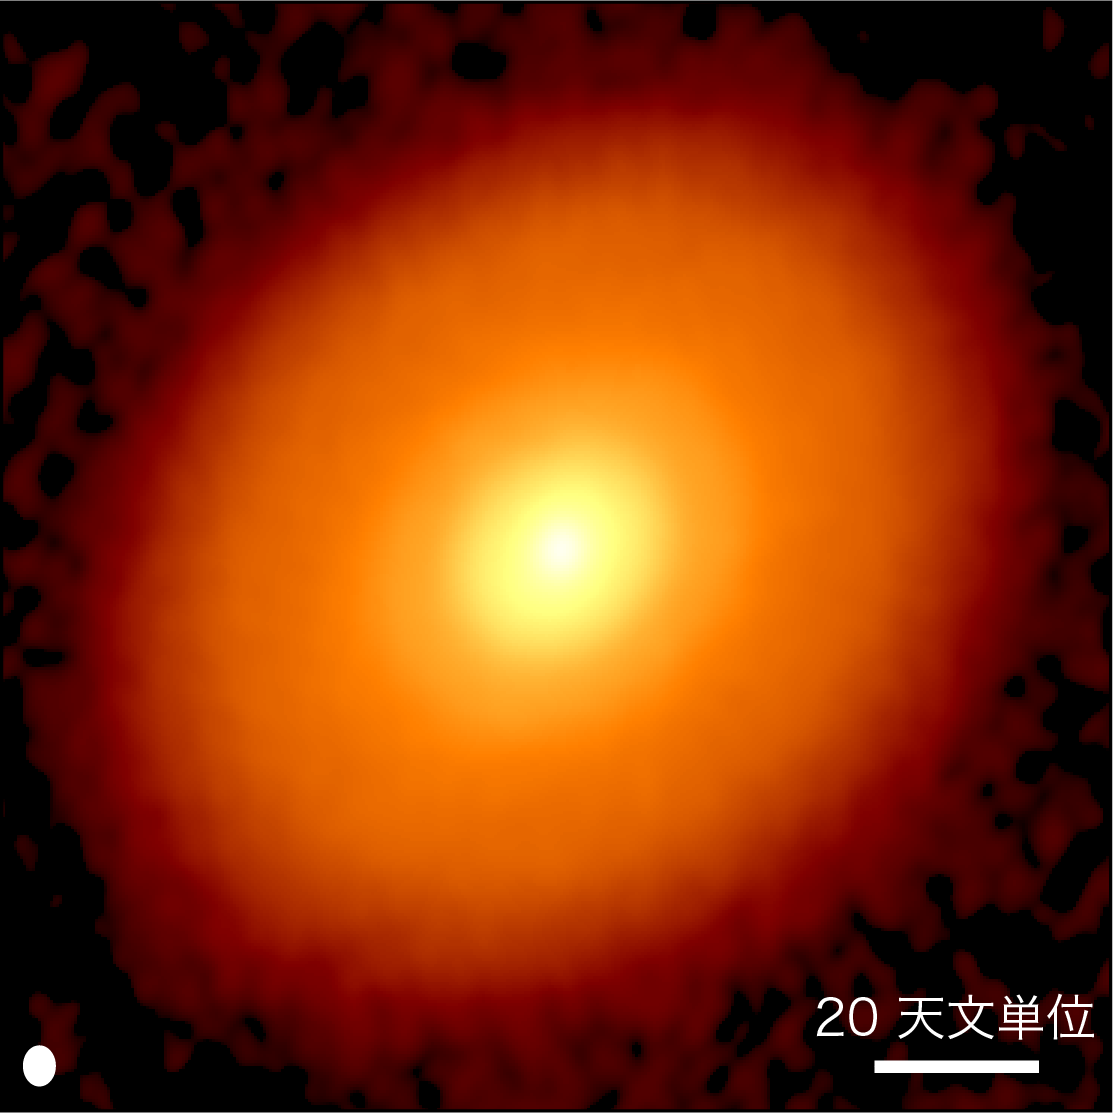 アルマ望遠鏡で観測した「おうし座DG星」を取り巻く原始惑星系円盤